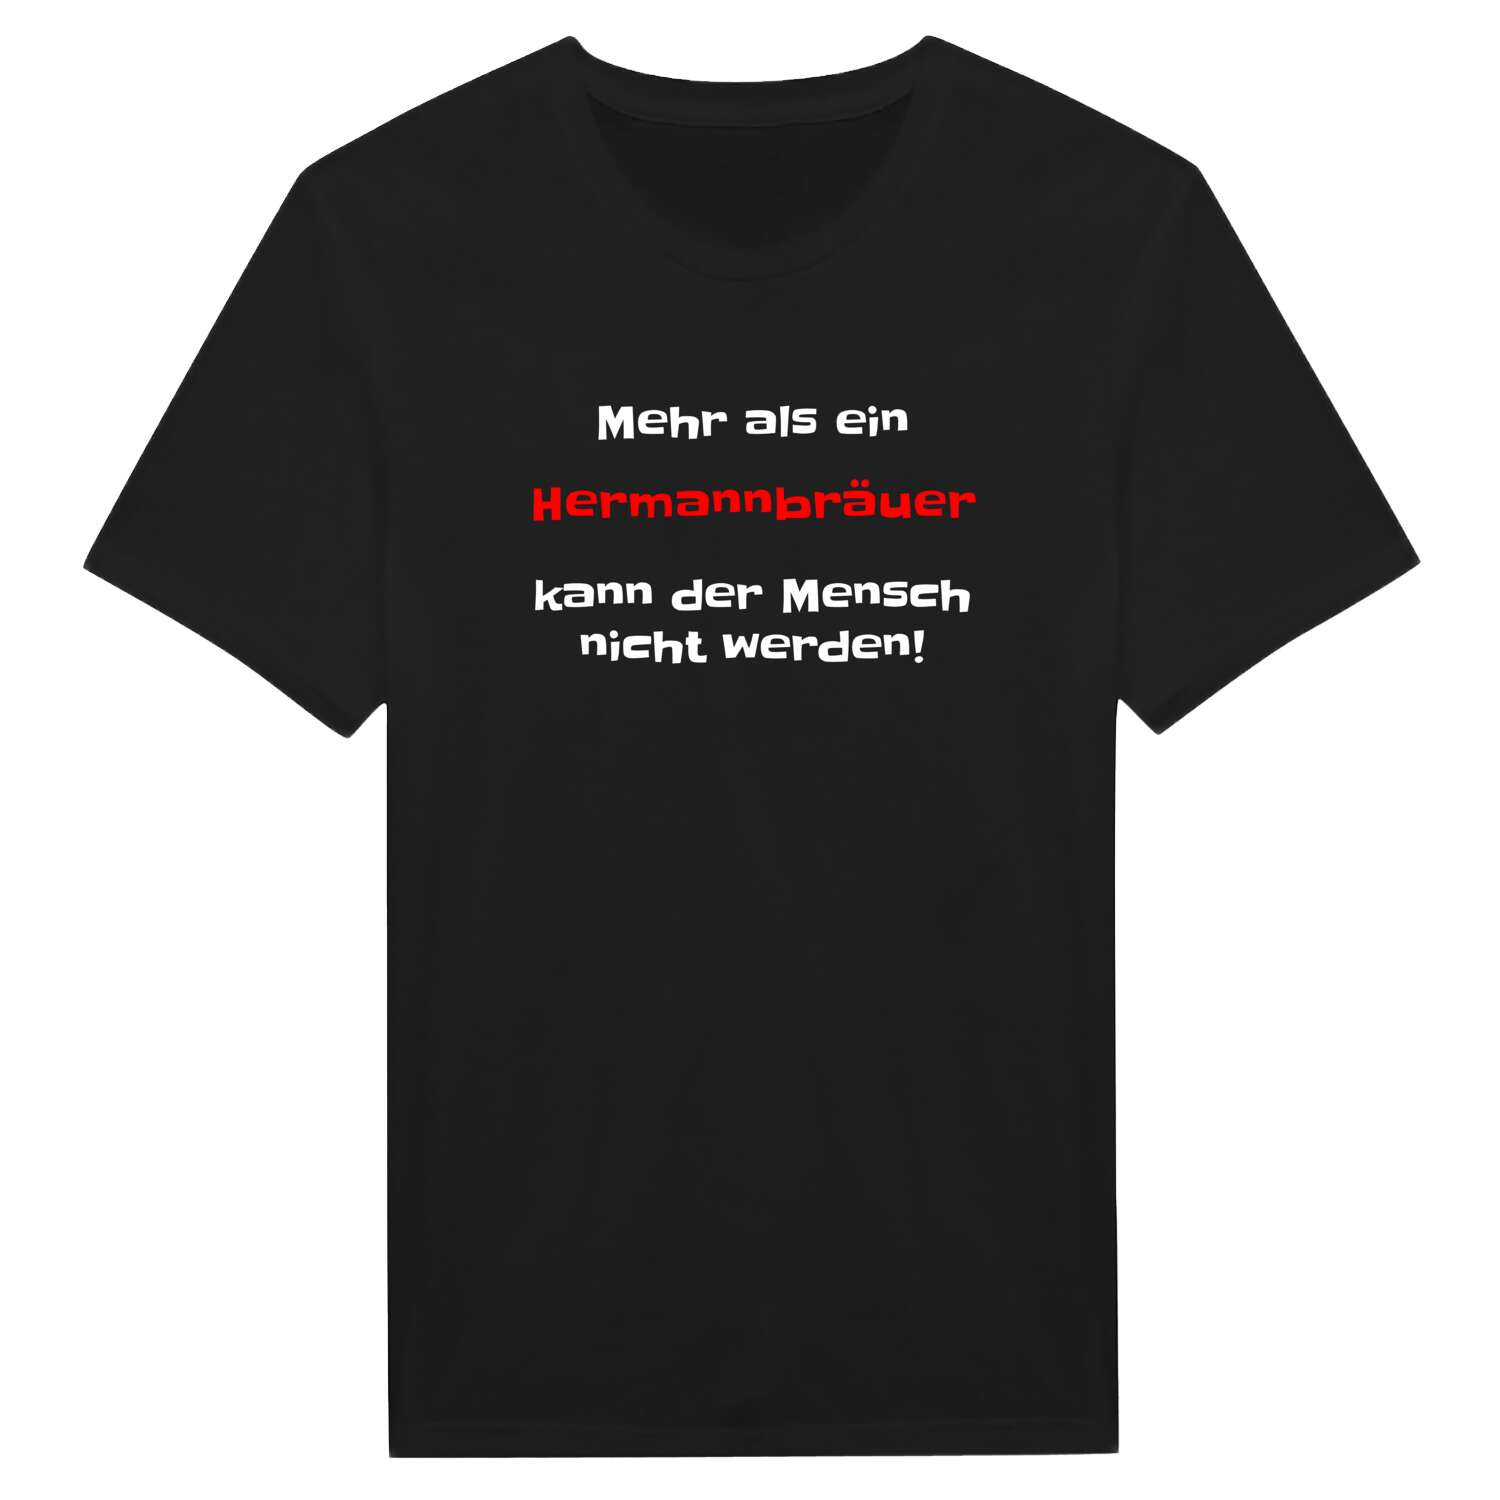 Hermannbräu T-Shirt »Mehr als ein«